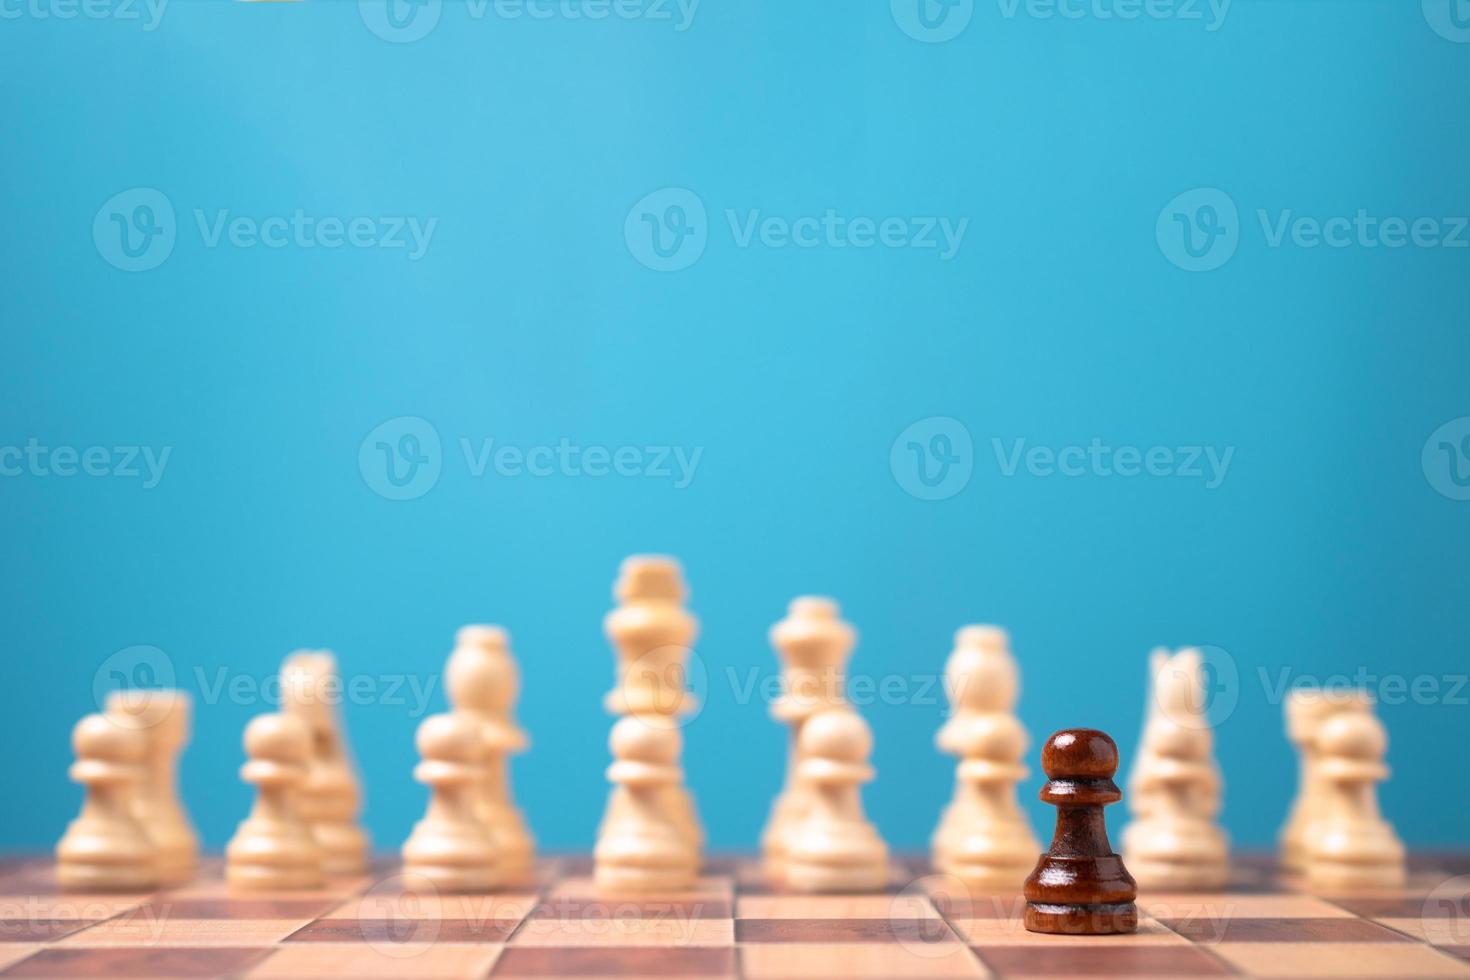 échecs brun debout devant des échecs blancs, le concept d'une nouvelle startup doit avoir du courage et du défi dans la compétition, le leadership et la vision commerciale pour gagner dans les jeux d'entreprise photo